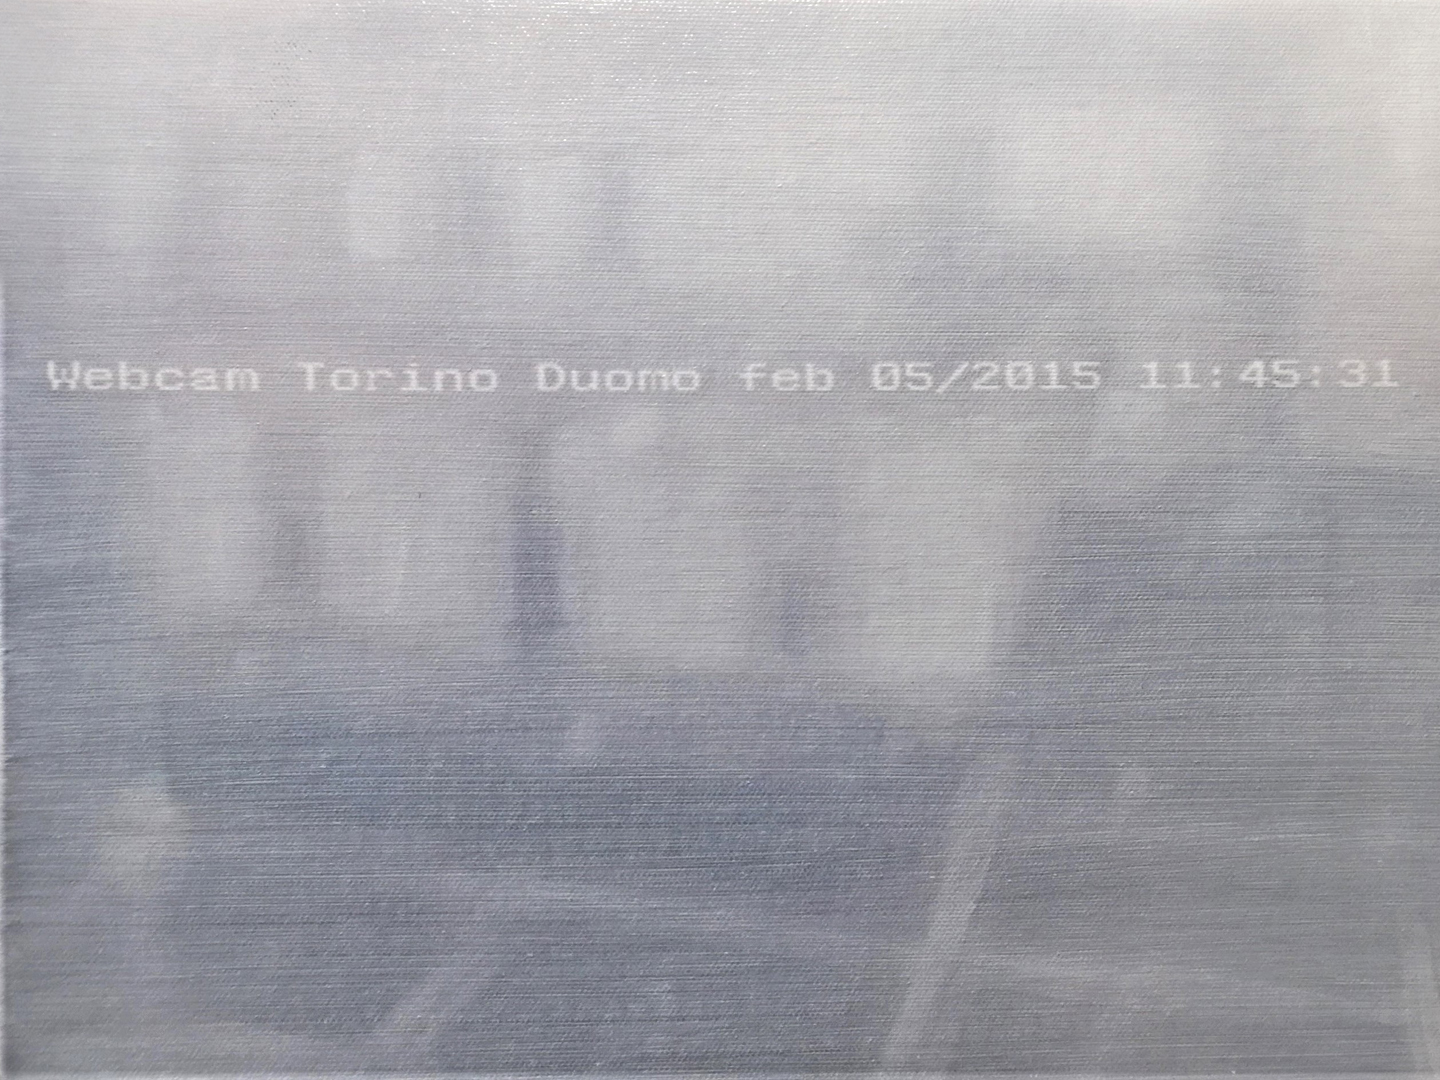 2015 Webcam Torino Duomo feb 05 2015 11 45 31 31 cm x 23 cm  